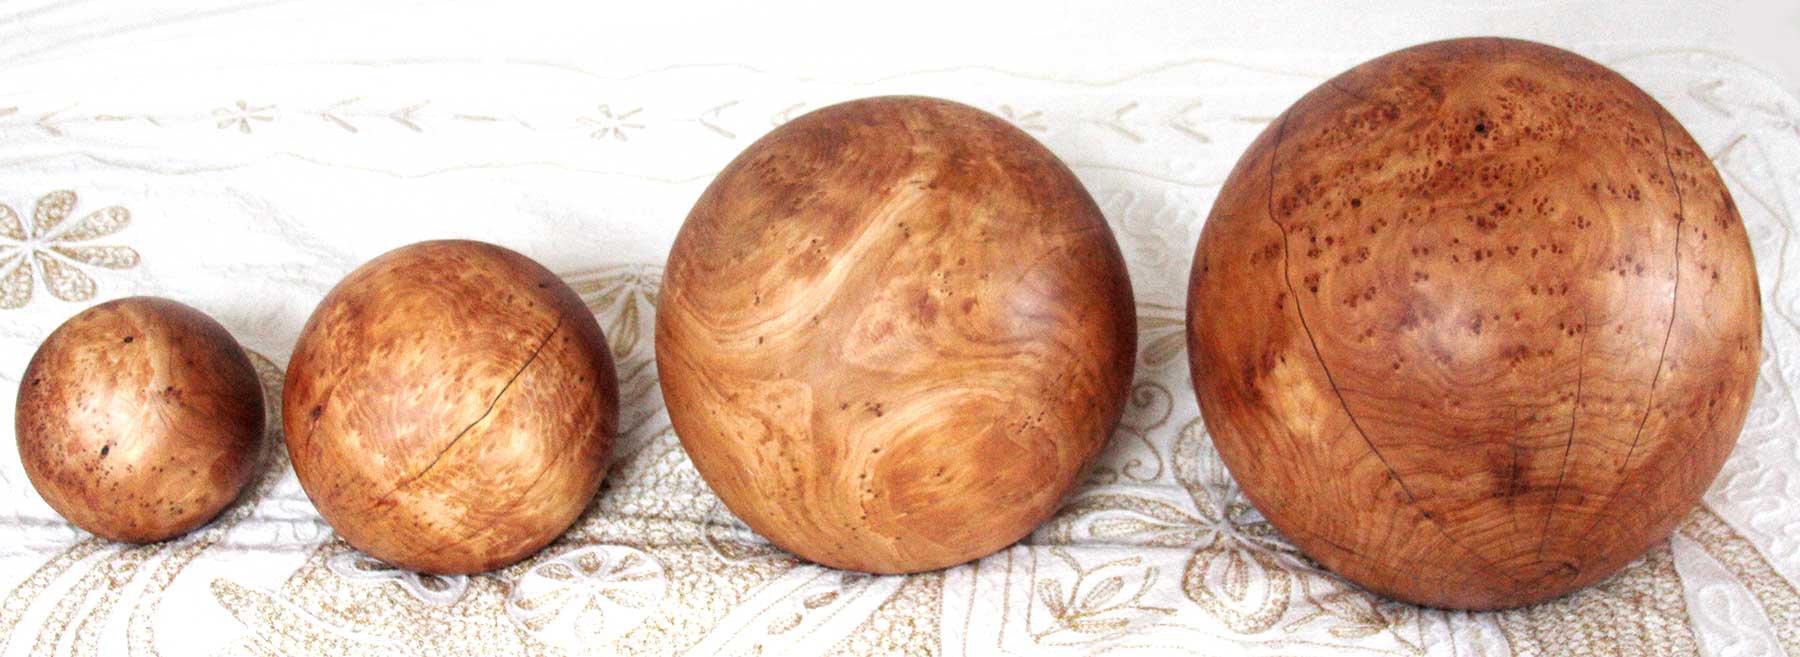  Wooden Balls